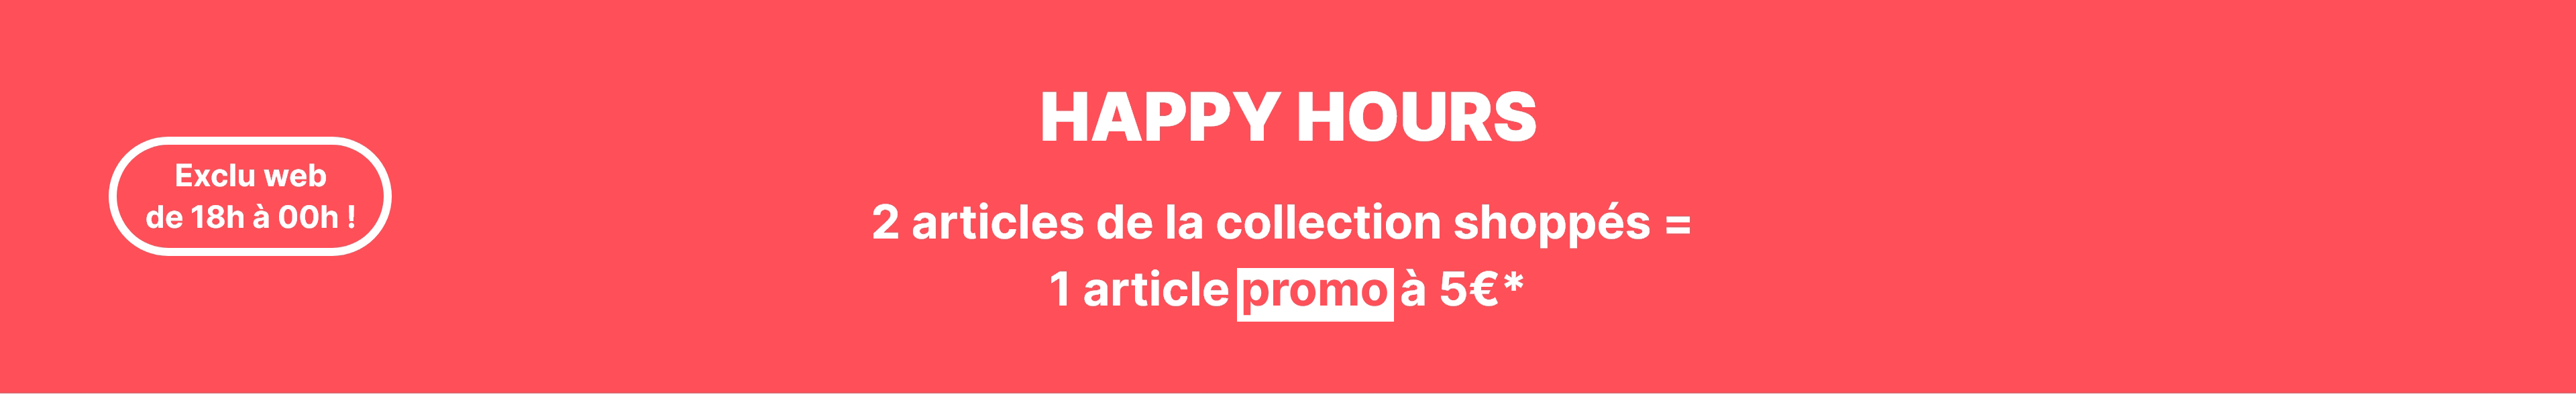 Happy hours 2 articles de la collection shoppés = 1 article promo à 5€* Pimkie